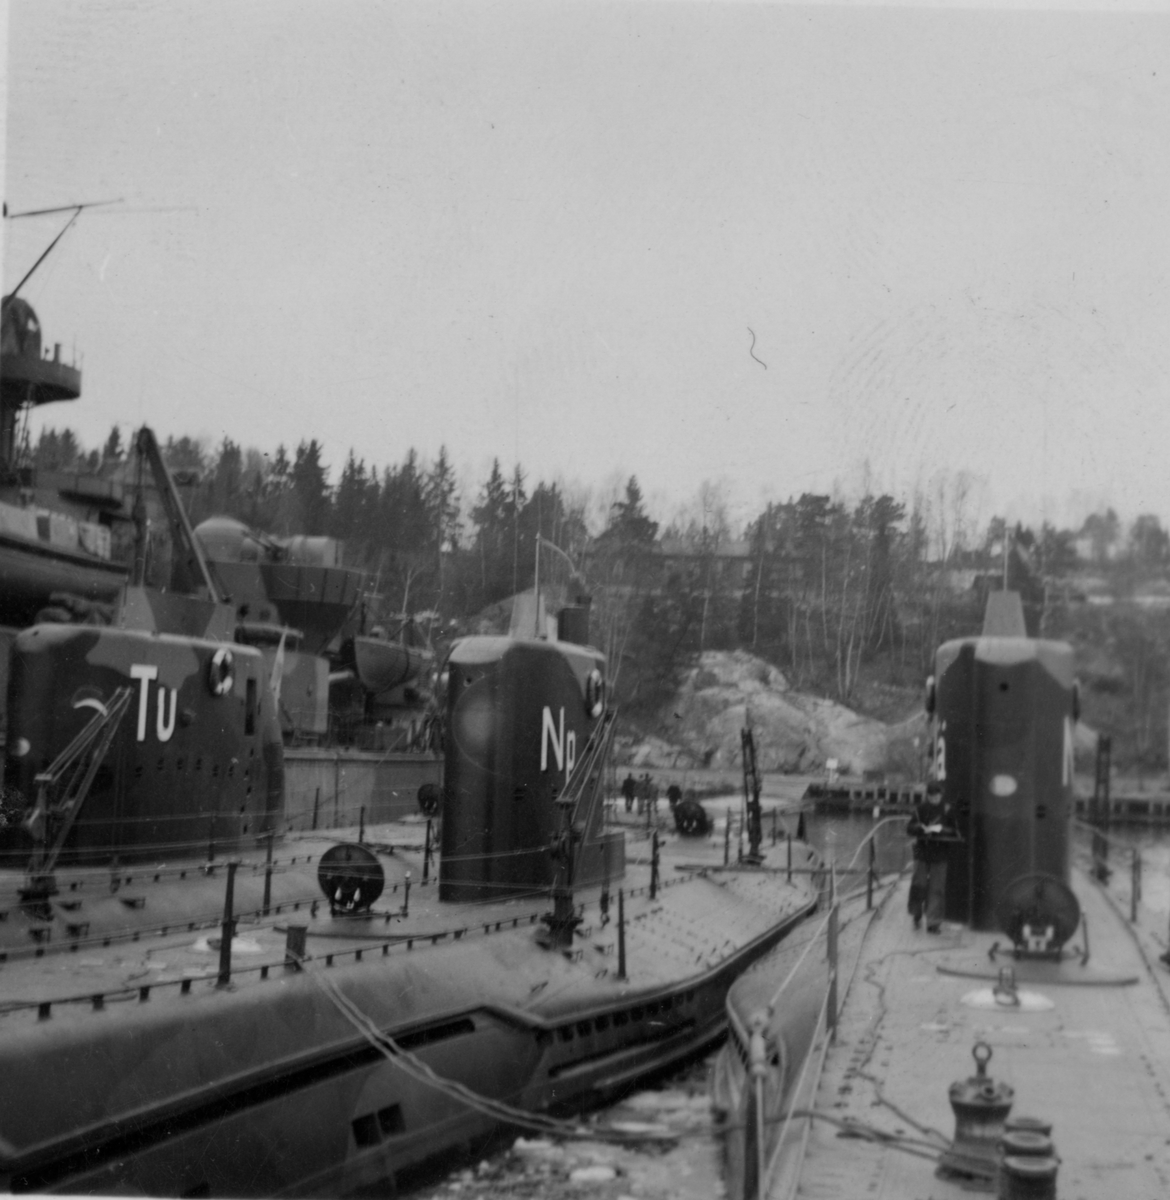 Lennart Wållberg Norrköping var förste kock på ubåten Neptun 1954 Neptuns långresa 1954.
Tumlaren, Neptun samt Näcken